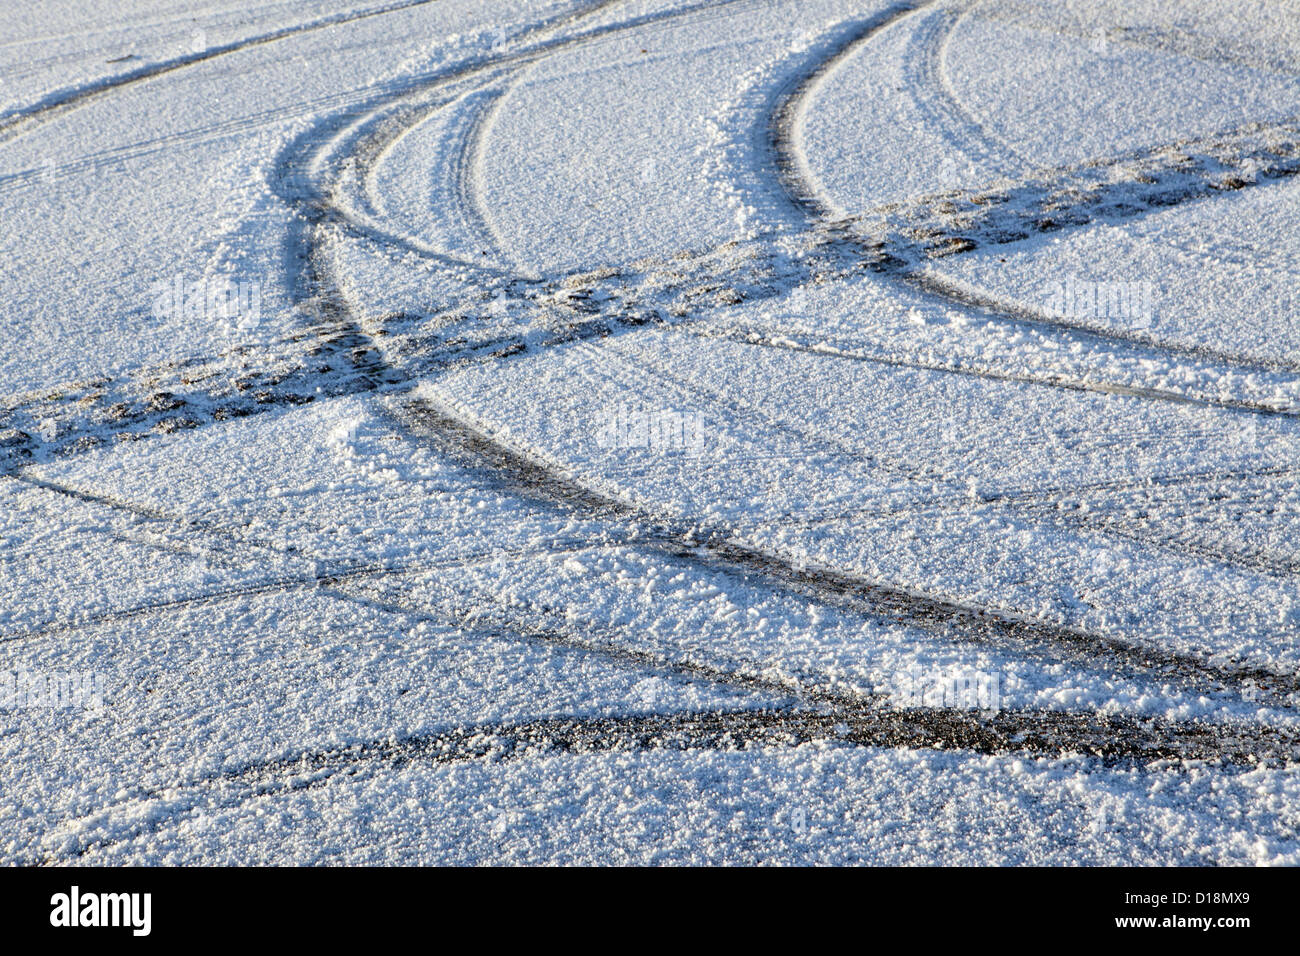 Tracce di pneumatici su superfici ghiacciate frosty snow non trattate superfici stradali, gelo invernale meteo la sicurezza stradale, UK. Foto Stock